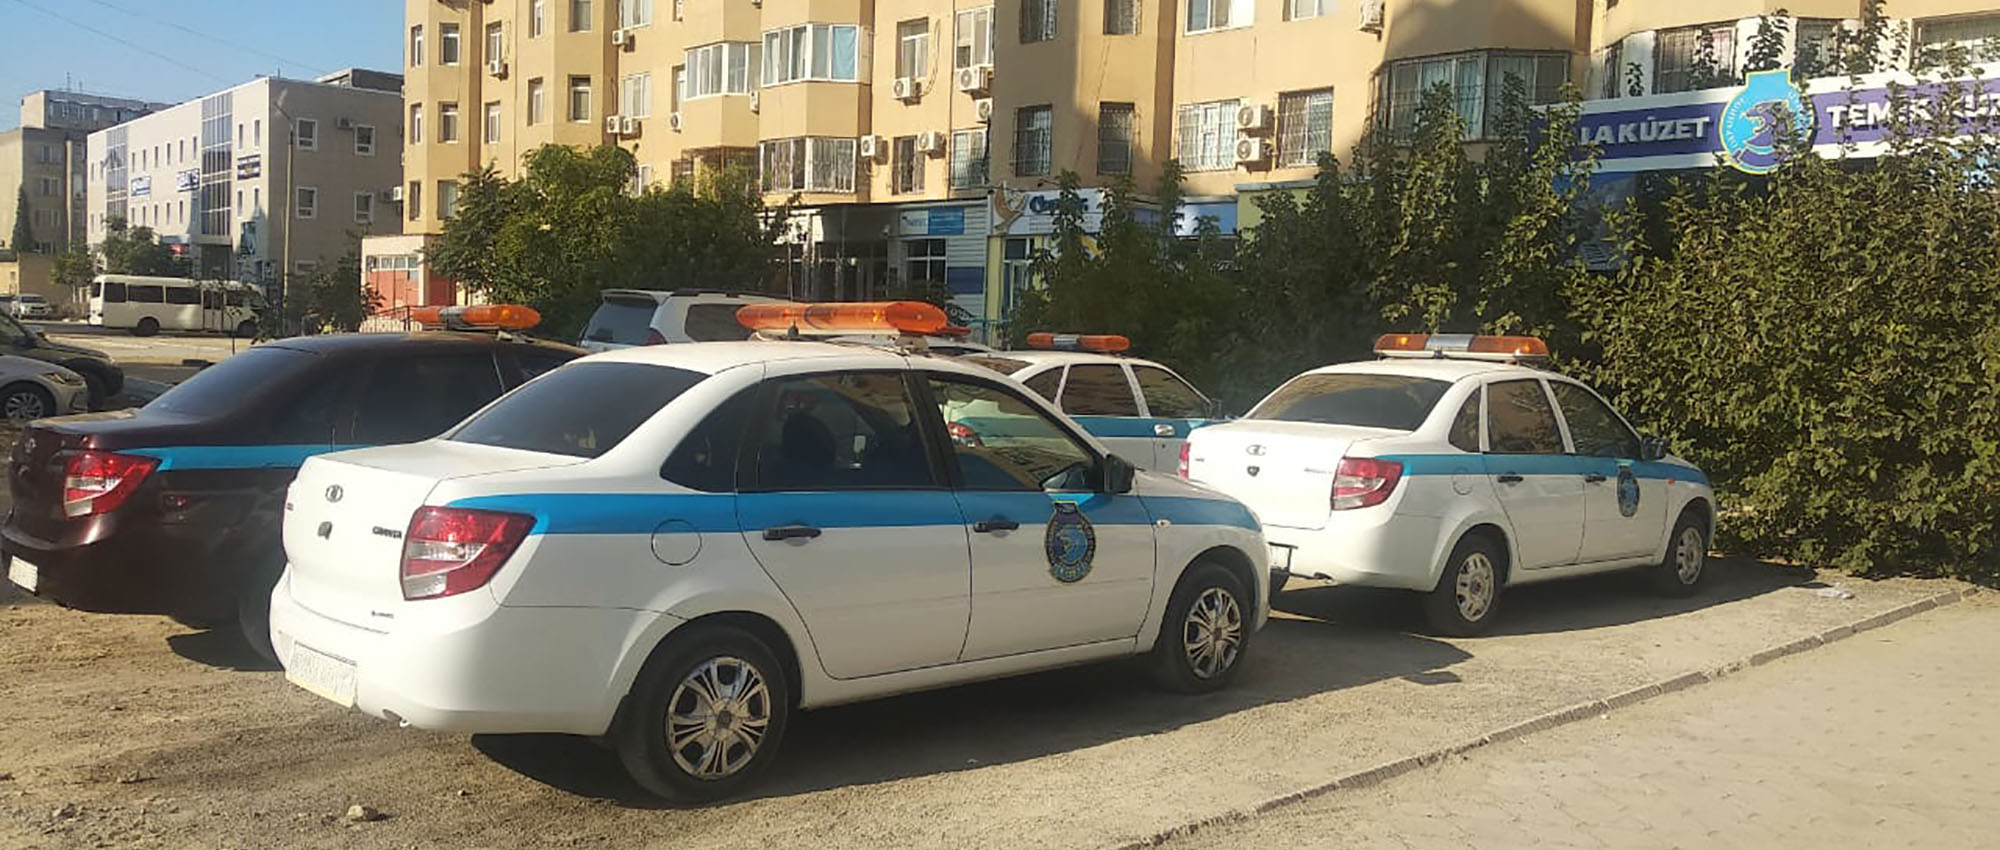 Автостоянка напротив охранного агентства Темир кузет